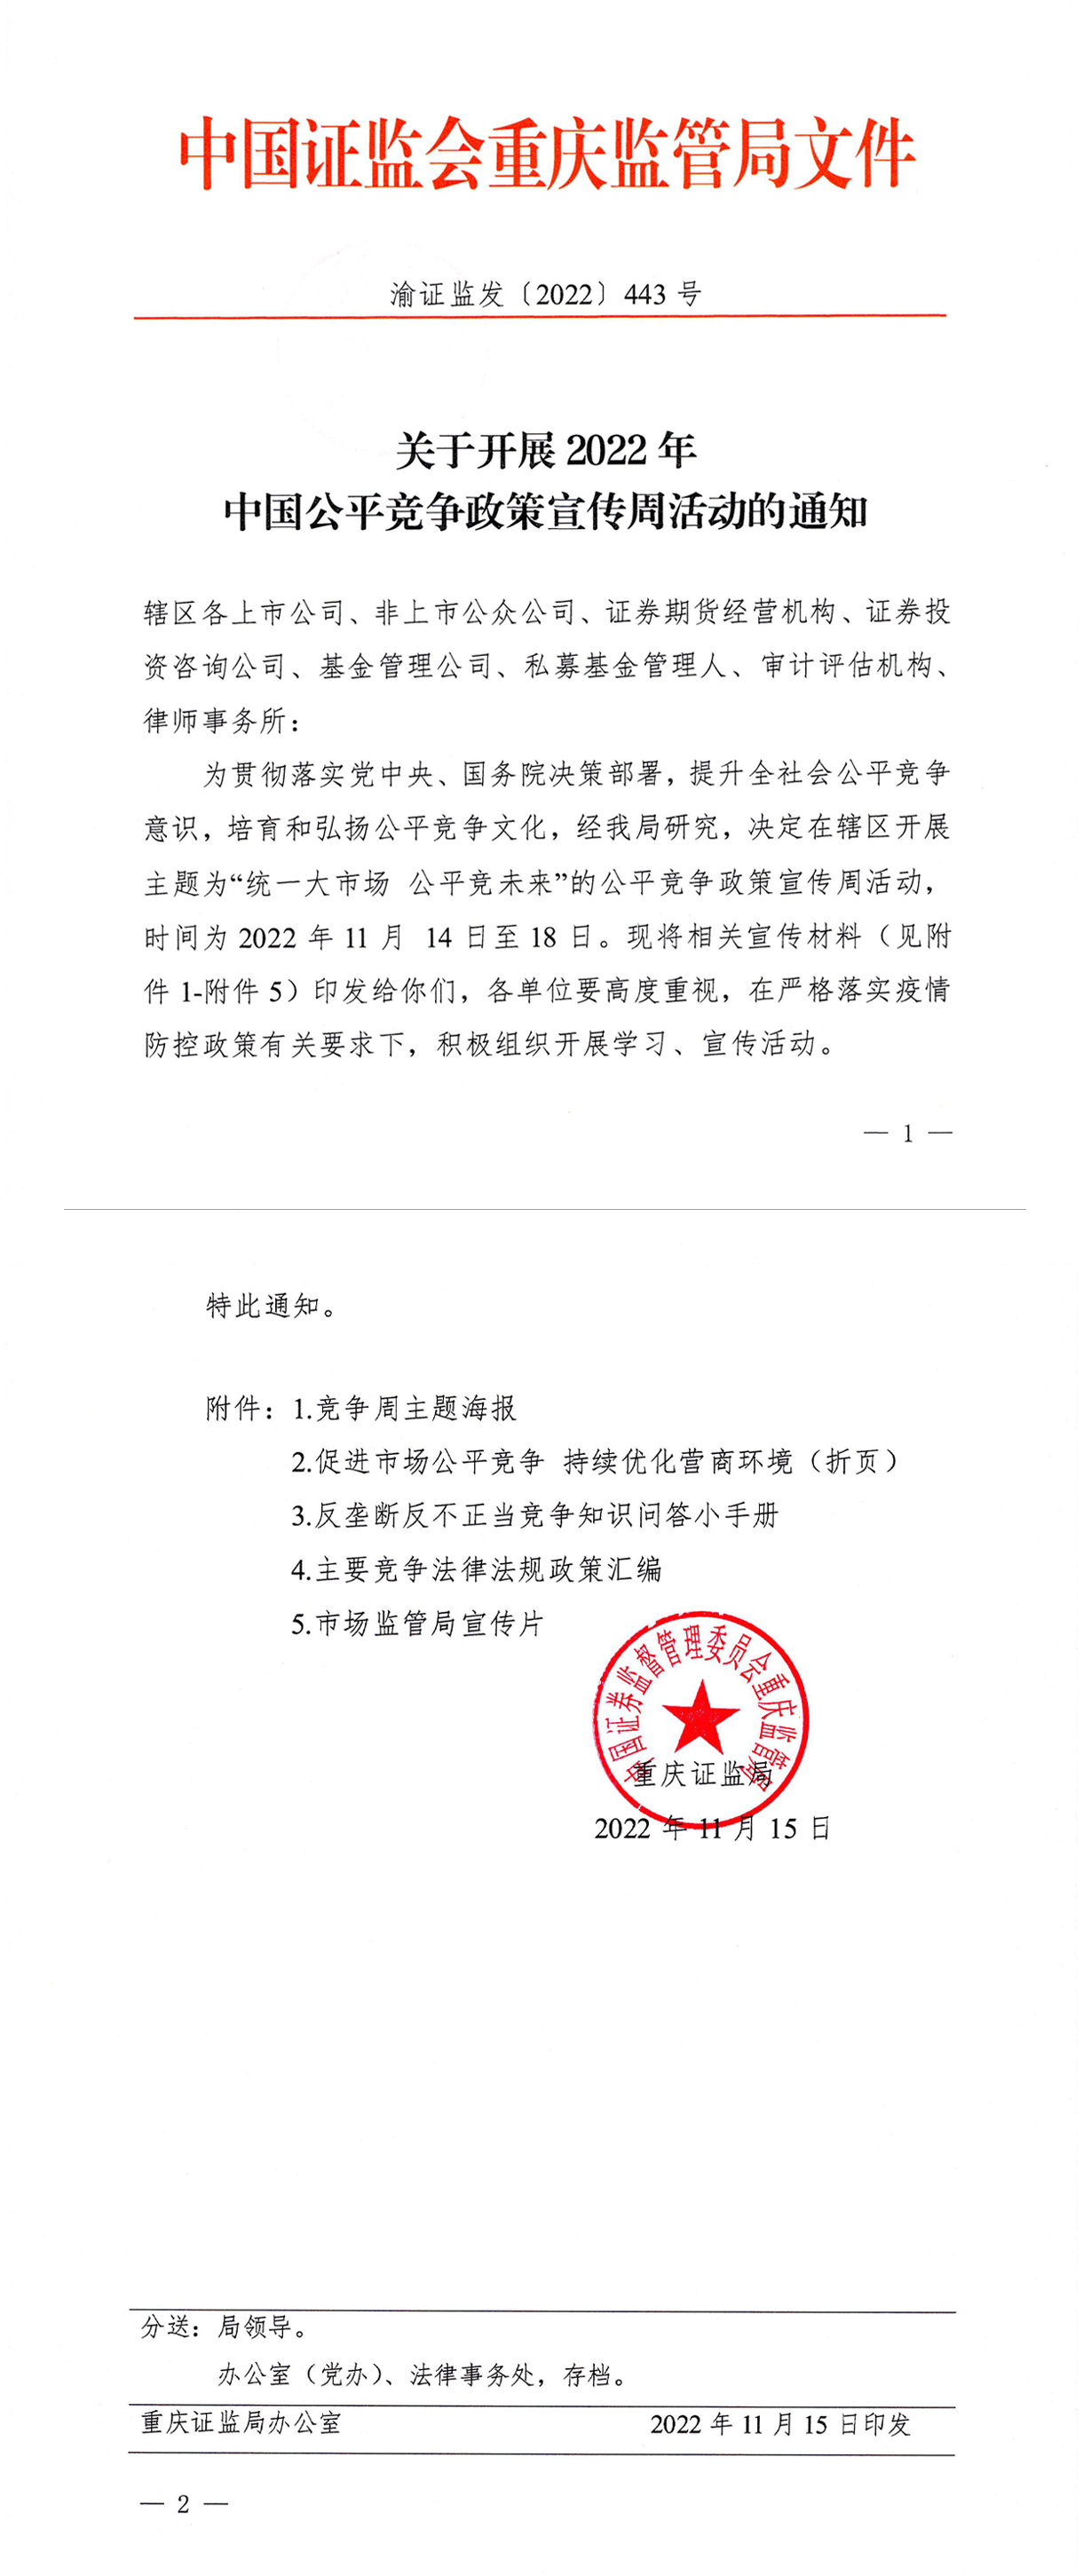 关于开展2022年中国公平竞争政策宣传周活动的通知(2)-1.jpg